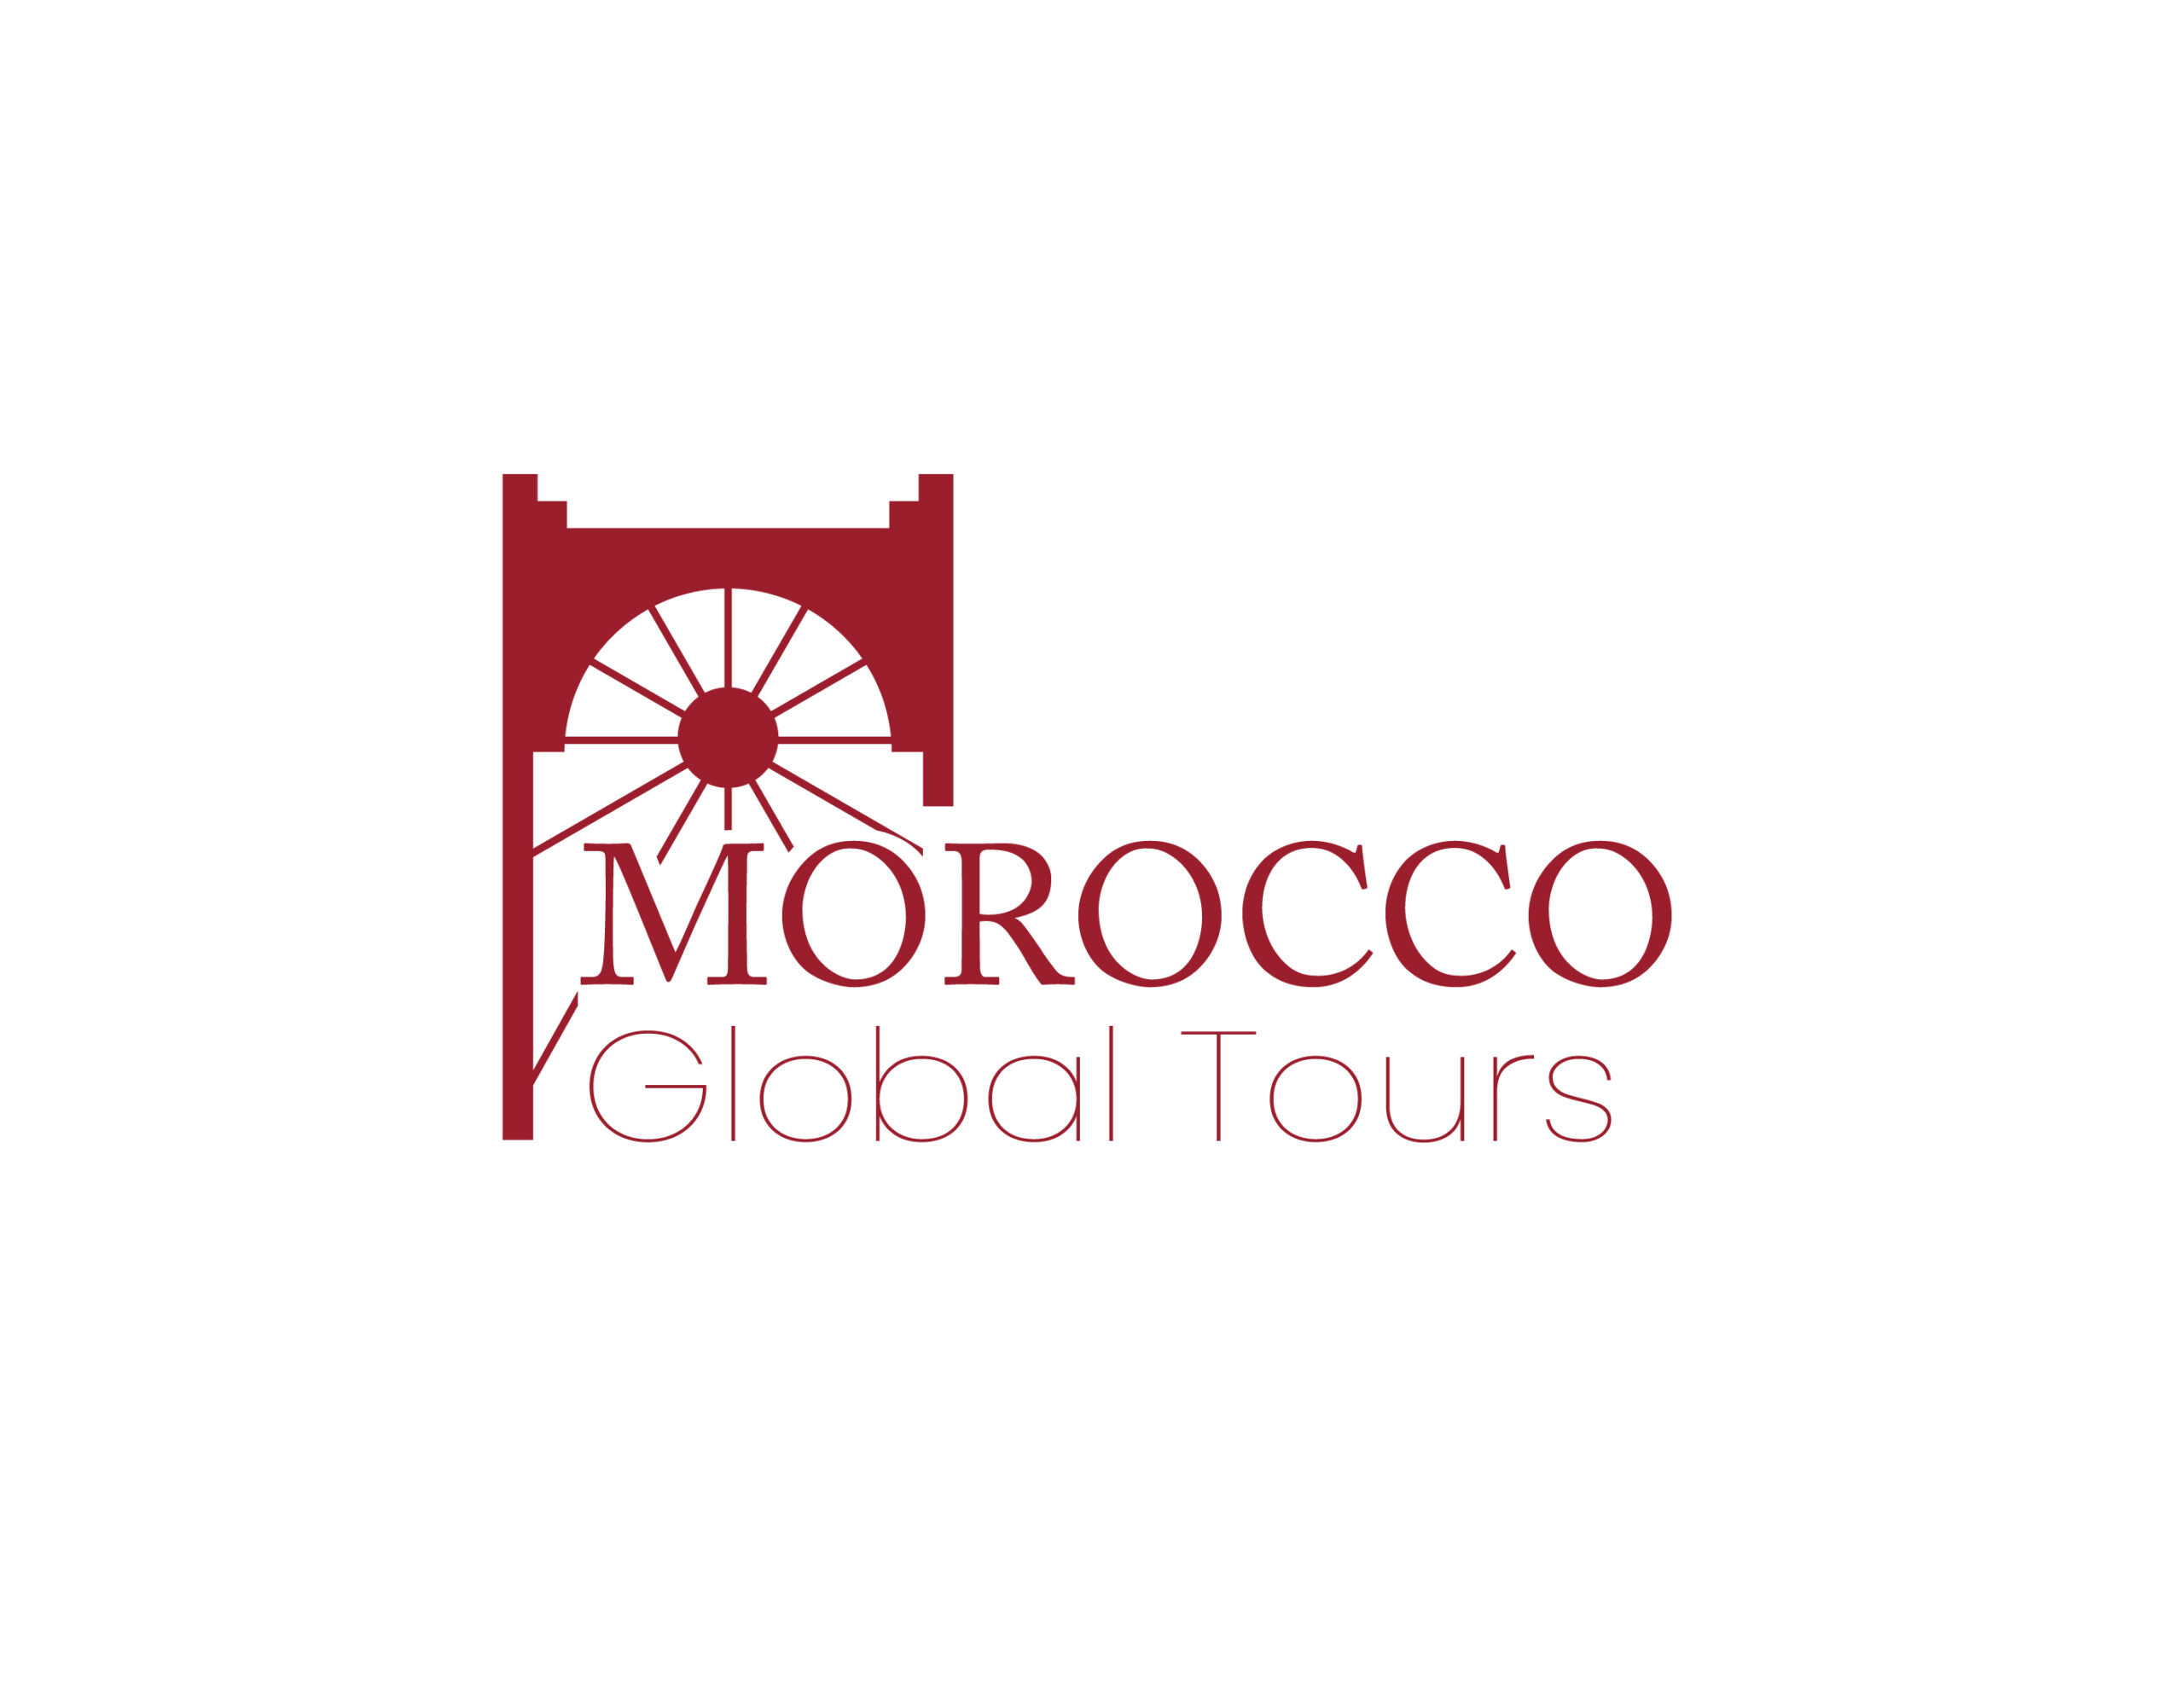 (c) Moroccoglobaltours.com